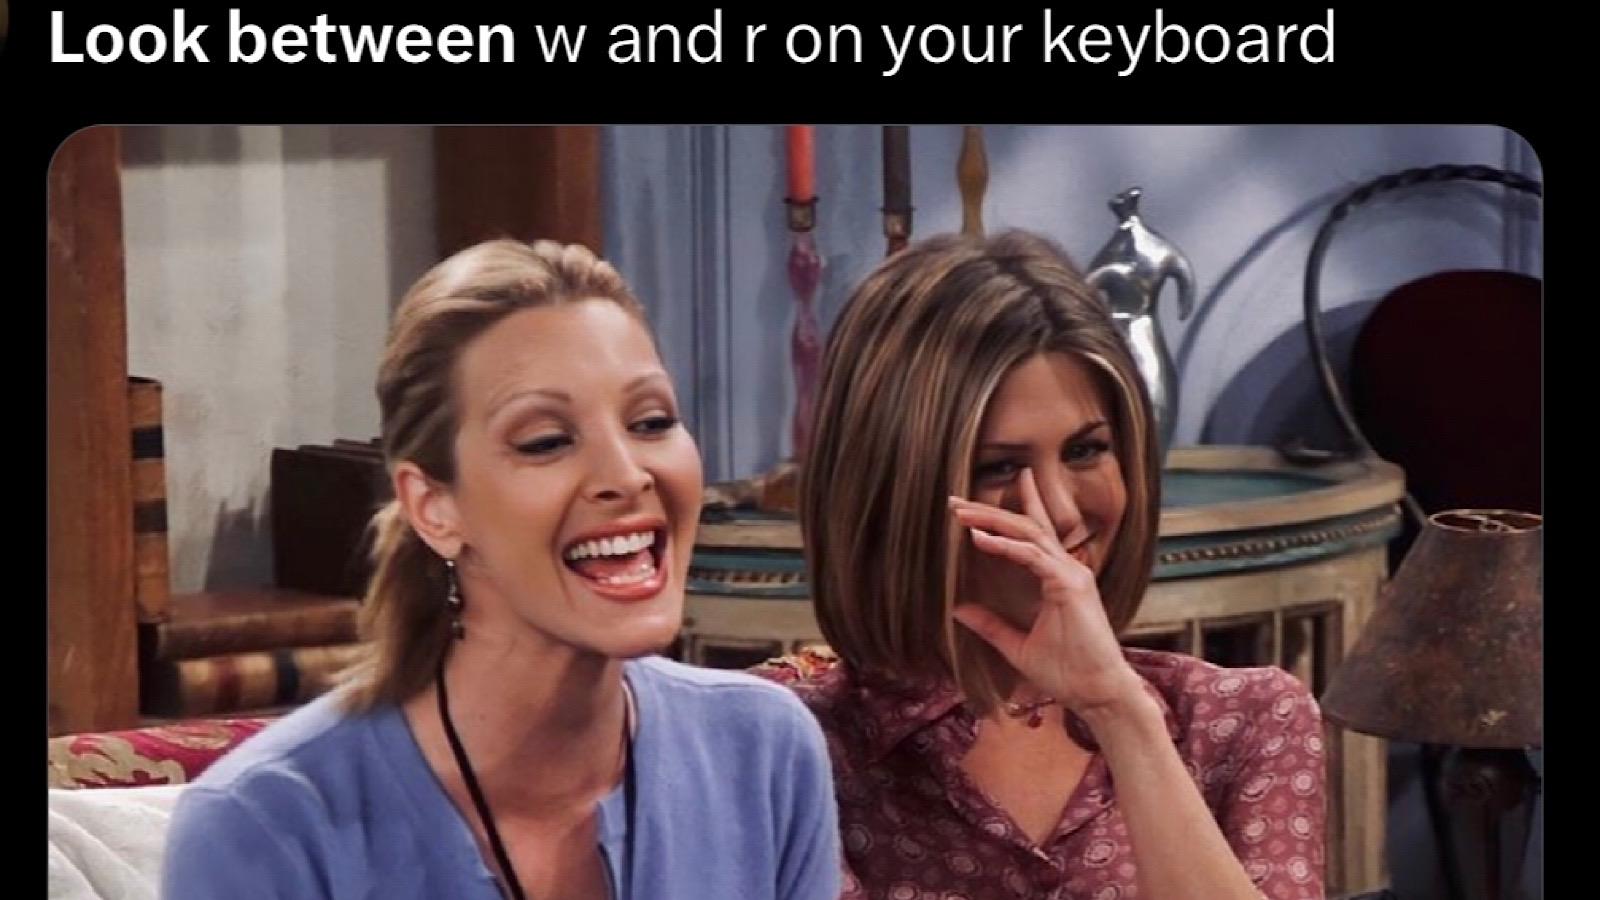 look between your keys on keyboard trend